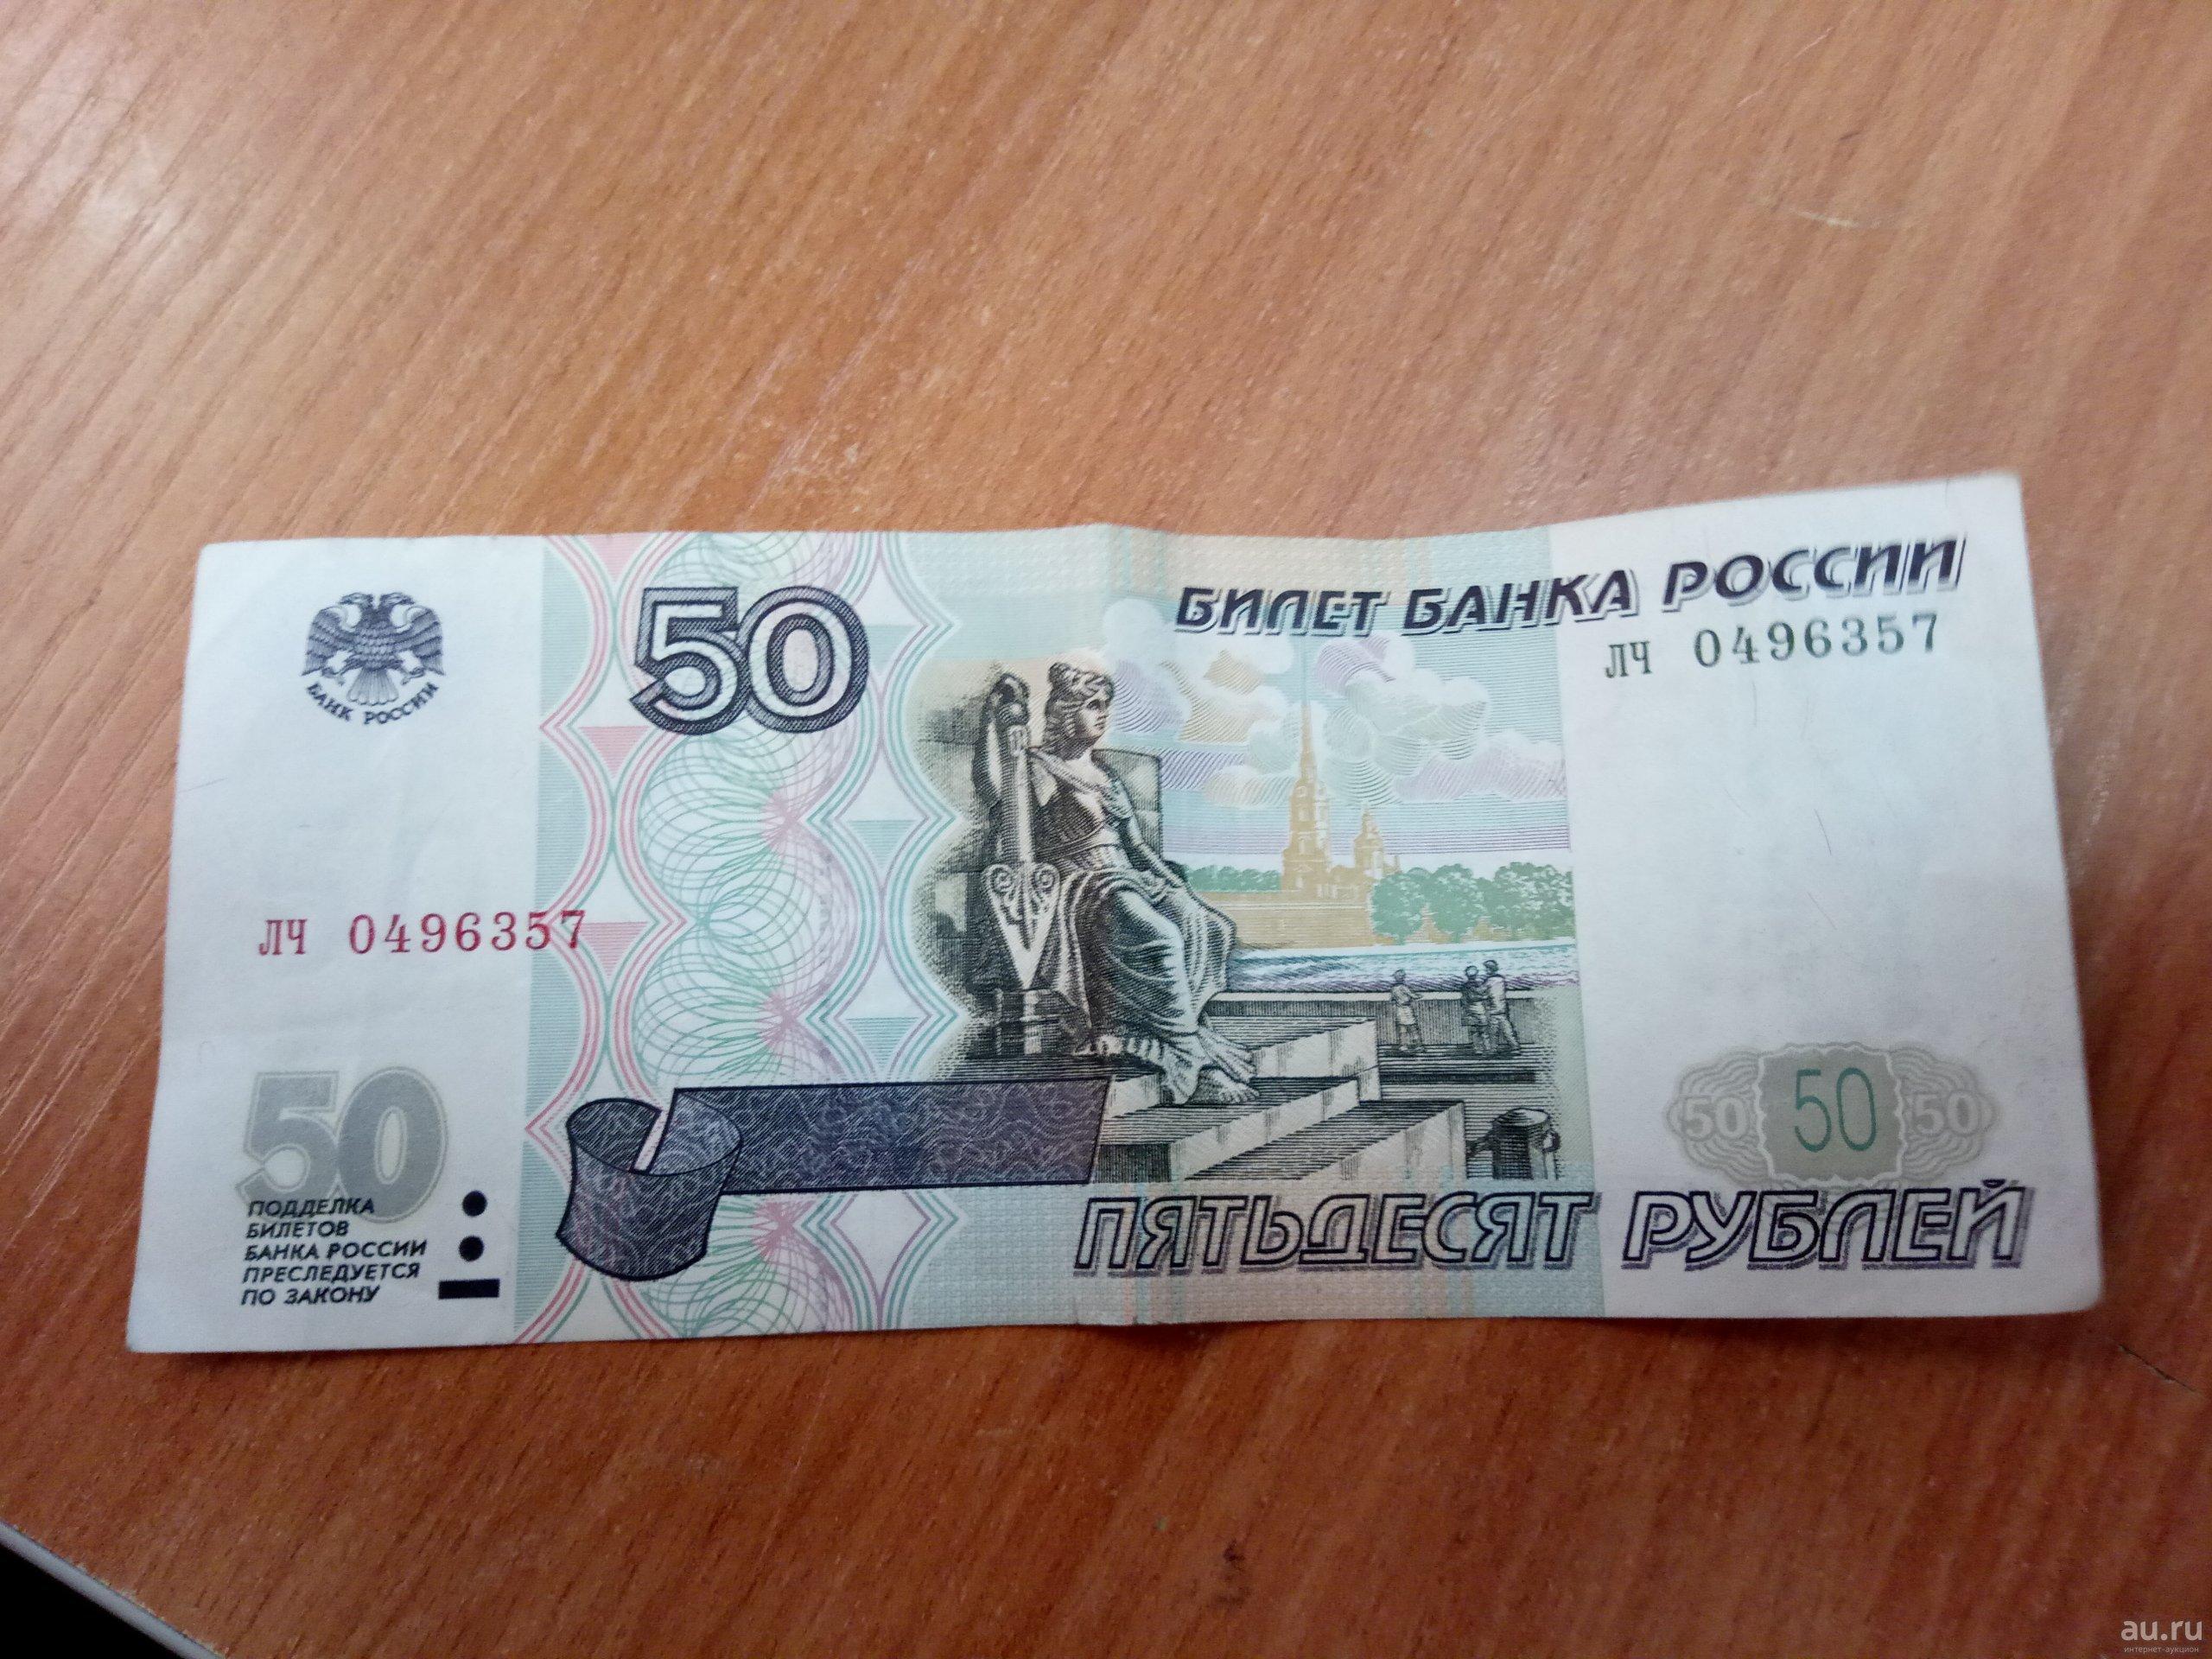 Пятьдесят руб. 50 Рублей. Купюра 50 рублей. 50 Рублей изображение. Пятьдесят рублей.